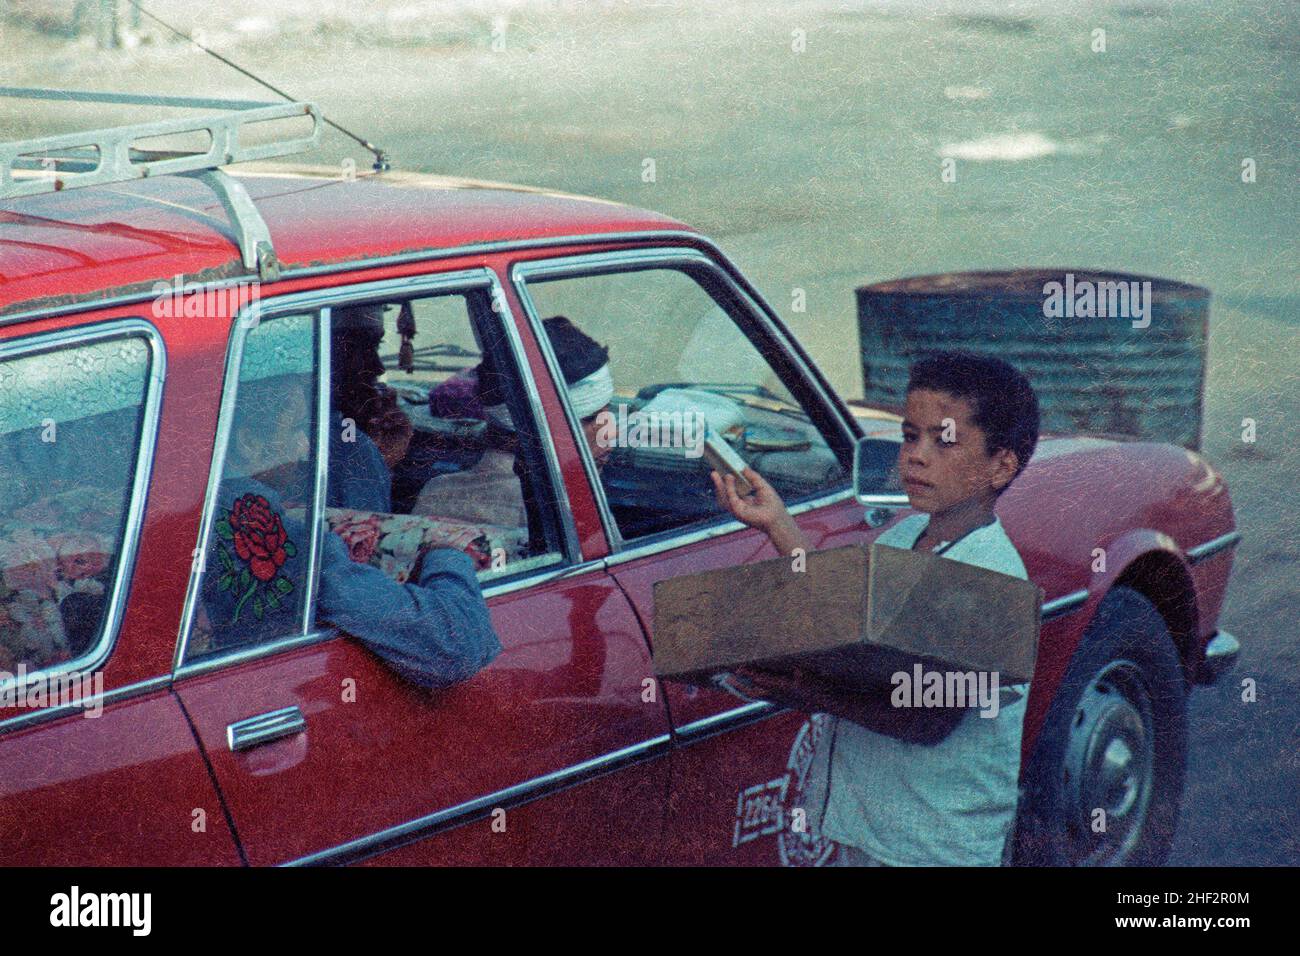 Giovane ragazzo che vende sigarette, settembre 1984, Egitto Foto Stock